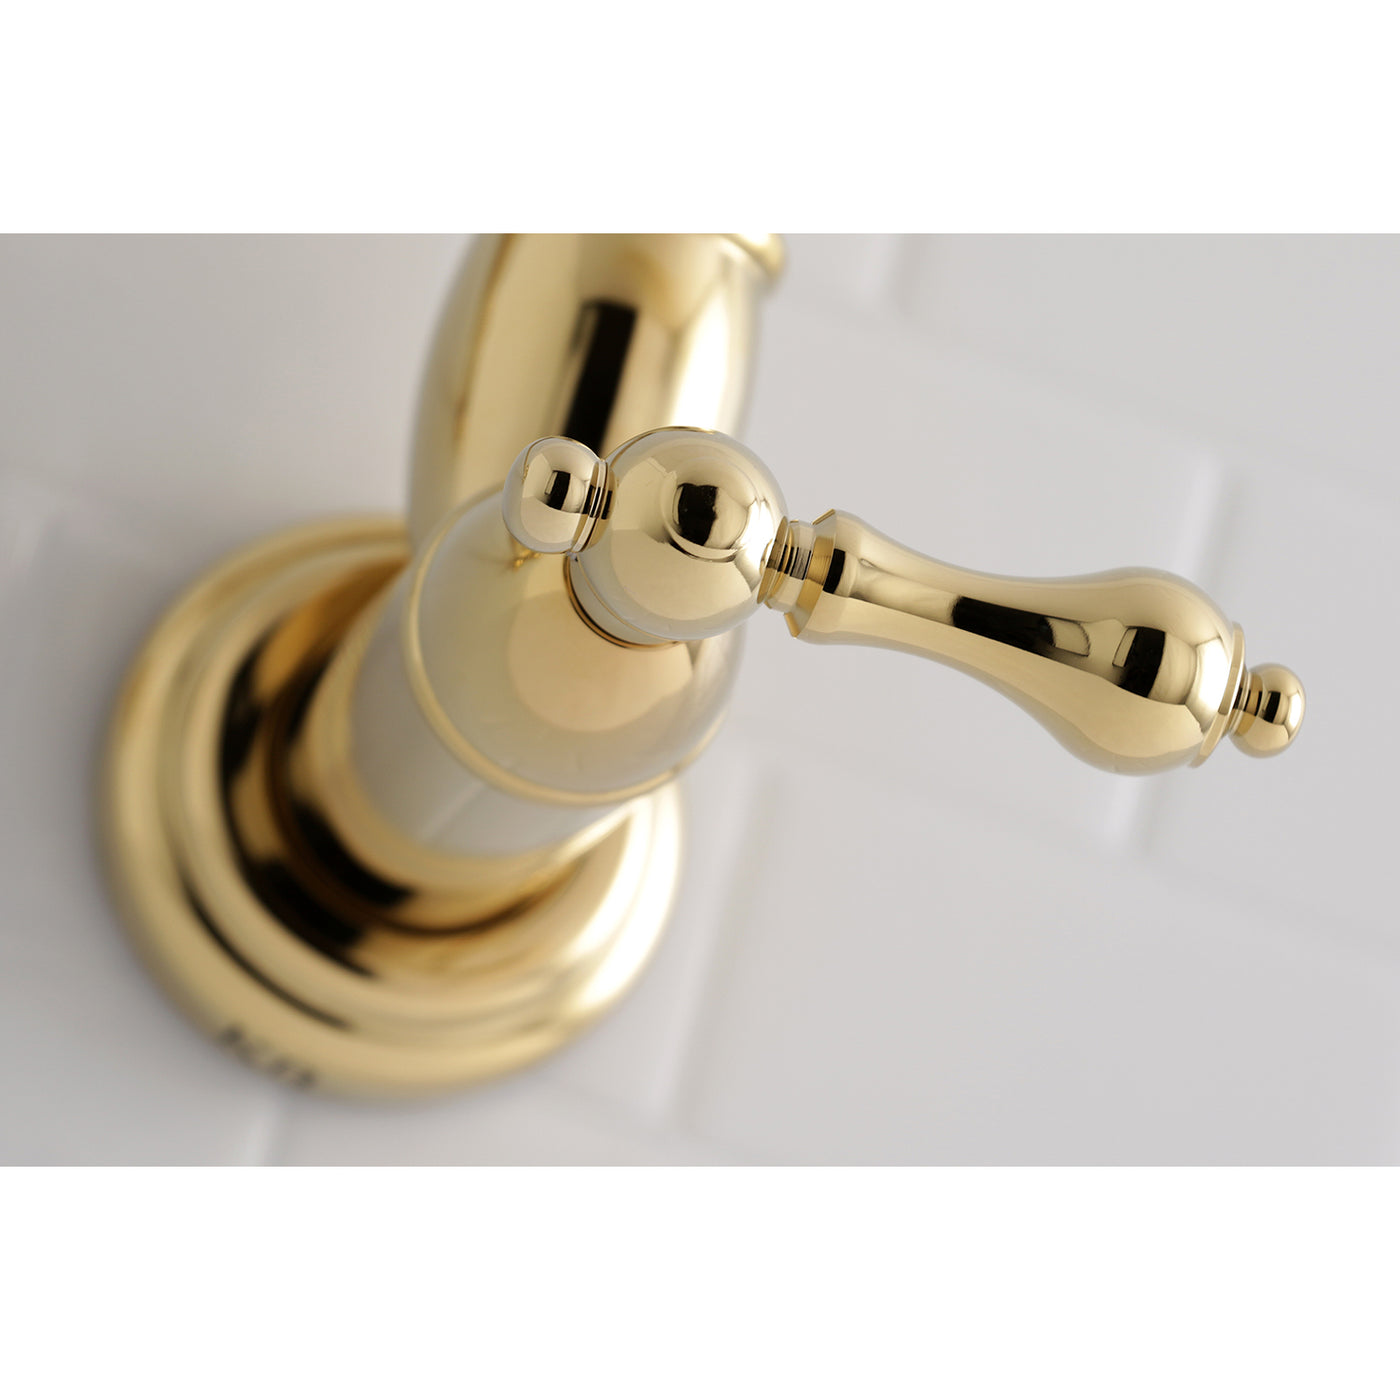 Elements of Design ES3102AL Wall Mount Pot Filler Kitchen Faucet, Polished Brass